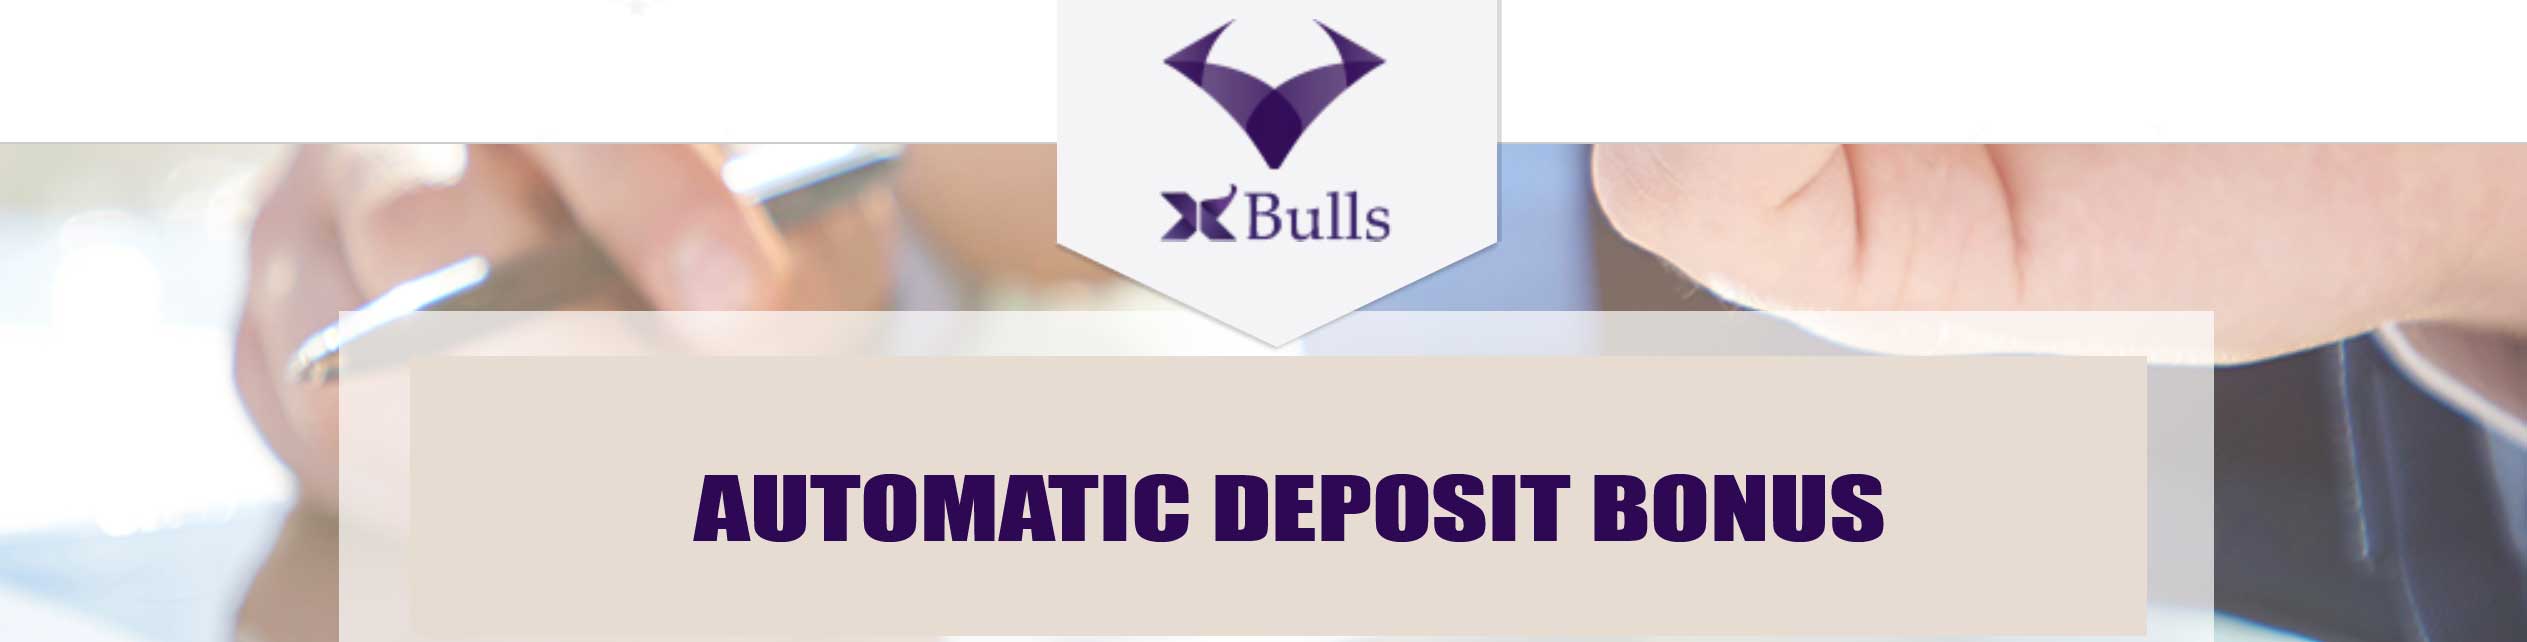 xbulls deposit bonus